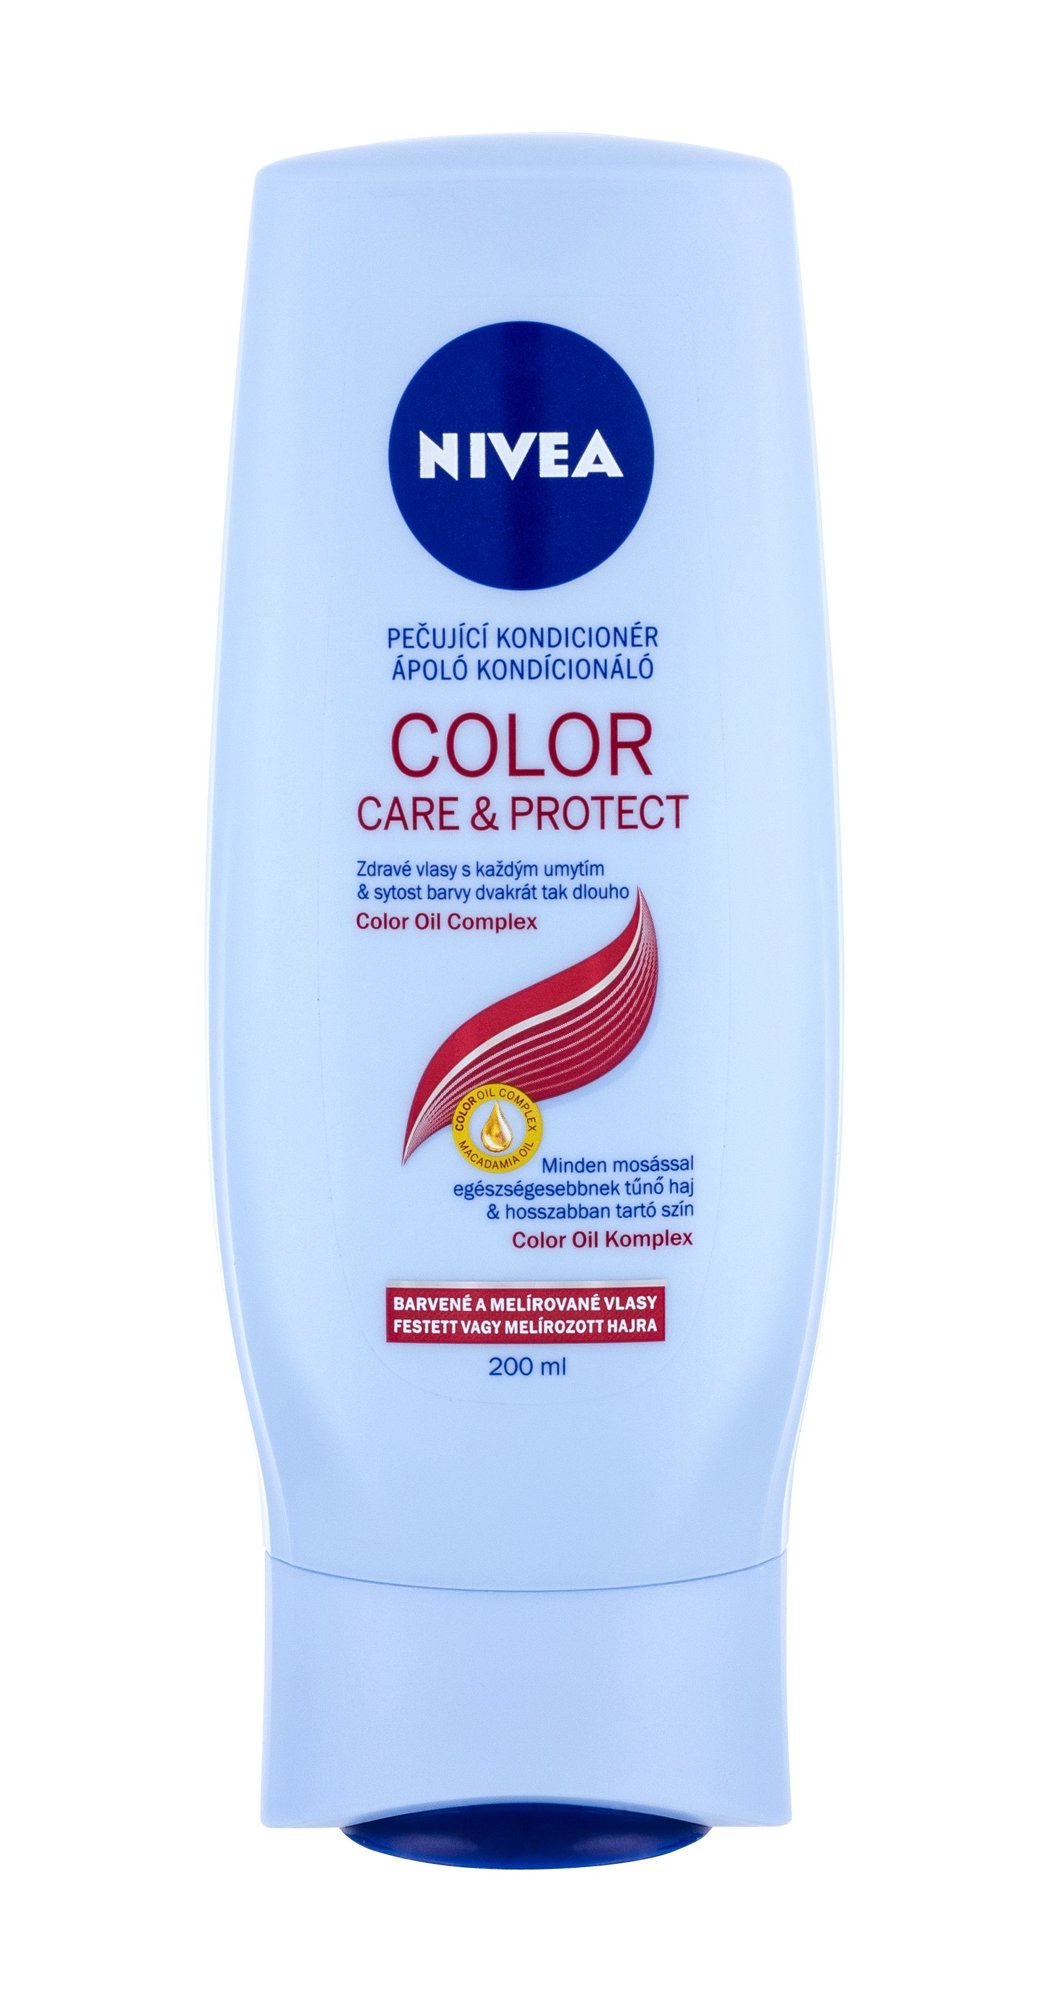 Nivea Color Protect Care 200ml kondicionierius